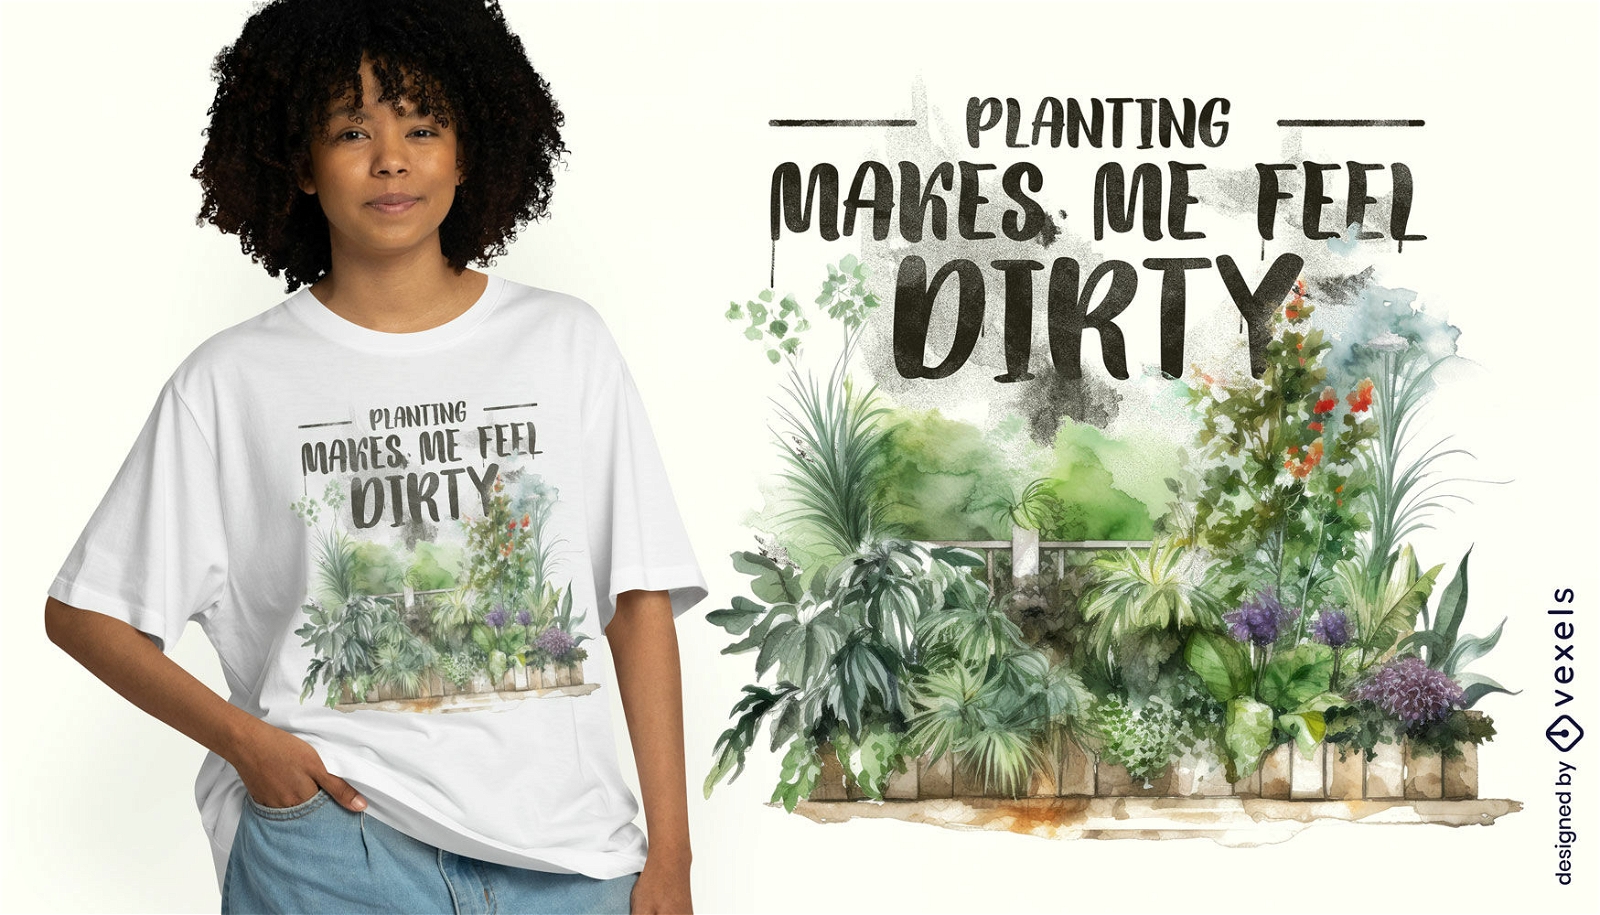 Dise?o de camiseta con cita de plantas y jardiner?a.